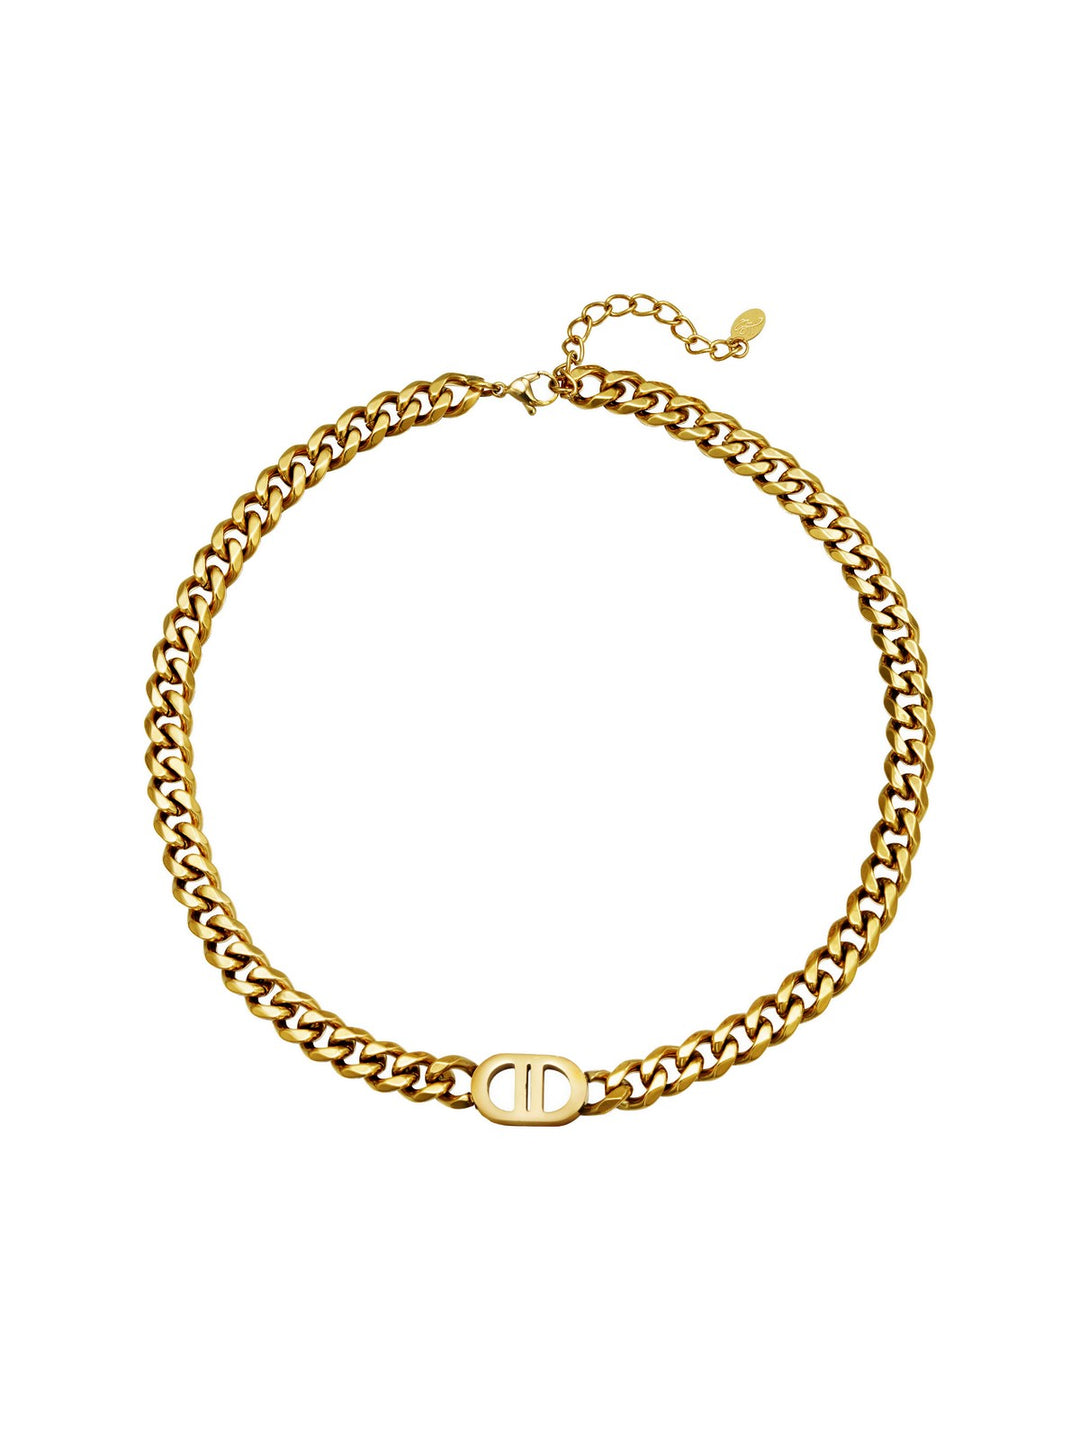 Pretty Chain Necklace Gold